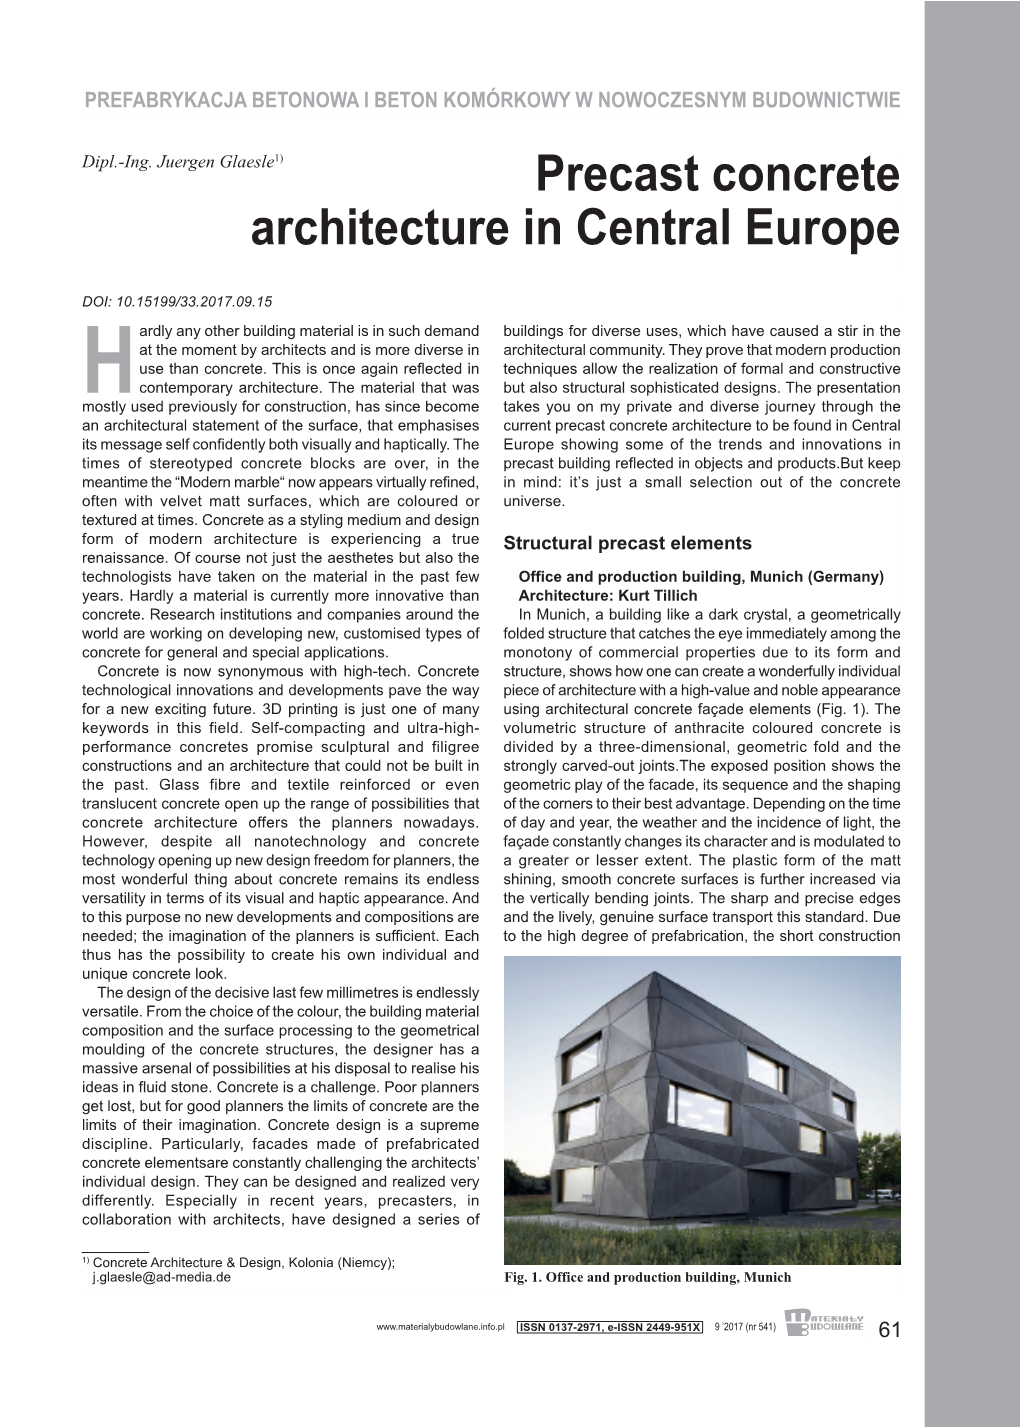 Precast Concrete Architecture in Central Europe